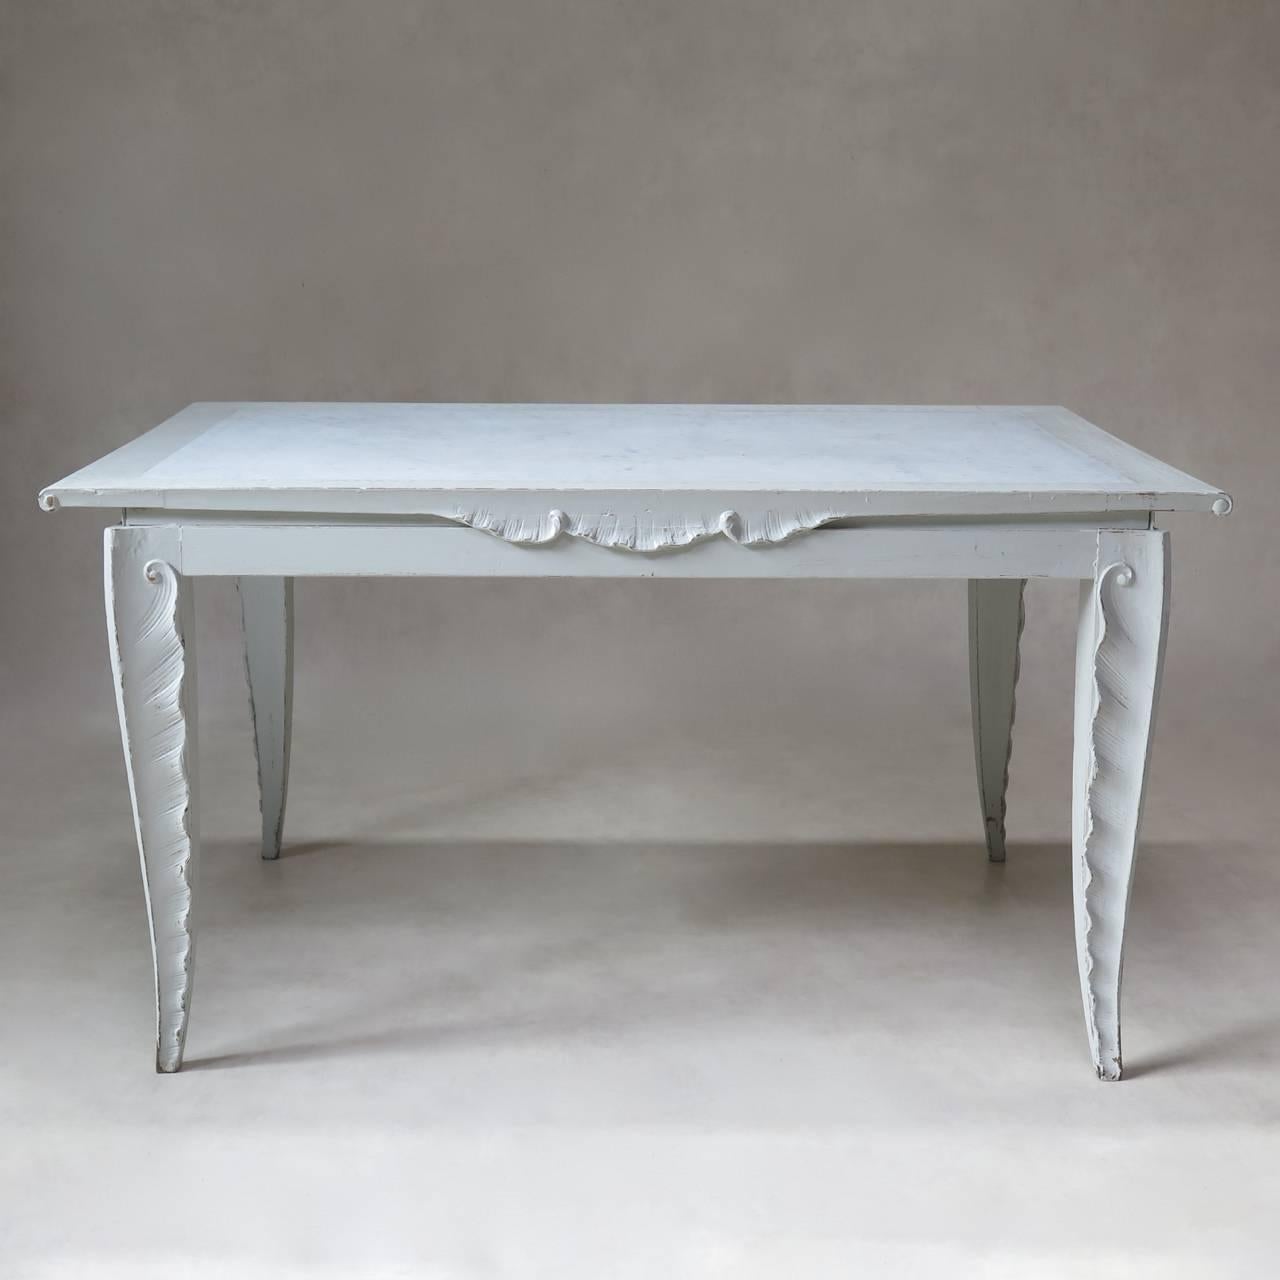 Eleganter bemalter Esszimmertisch und vier Stühle mit ungewöhnlichem Design.

Der rechteckige Tisch hat eine weiße Marmorplatte mit Holzumrandung und steht auf spitz zulaufenden Beinen, die mit einem filigranen, palmenwedel- oder federartigen